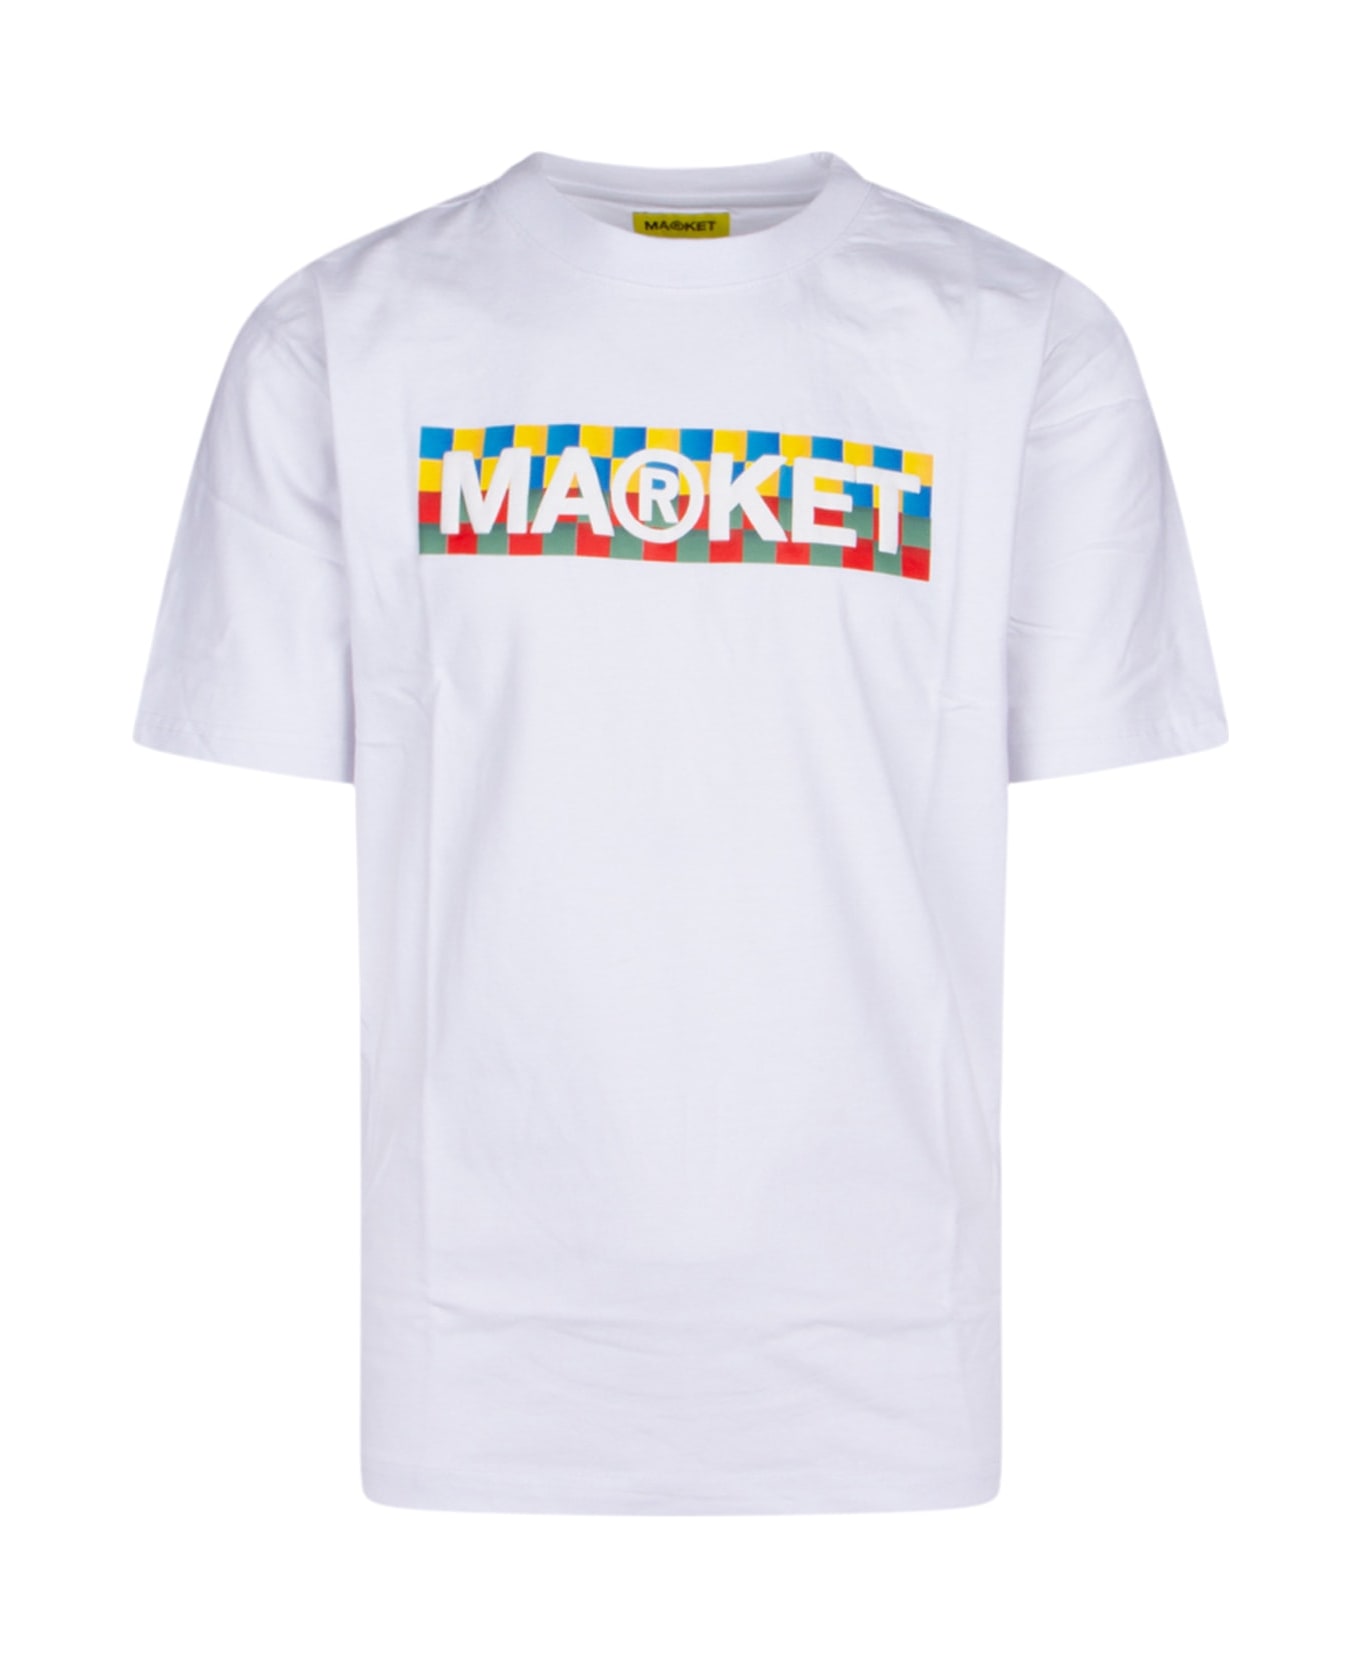 Market T-shirt - WHITE シャツ